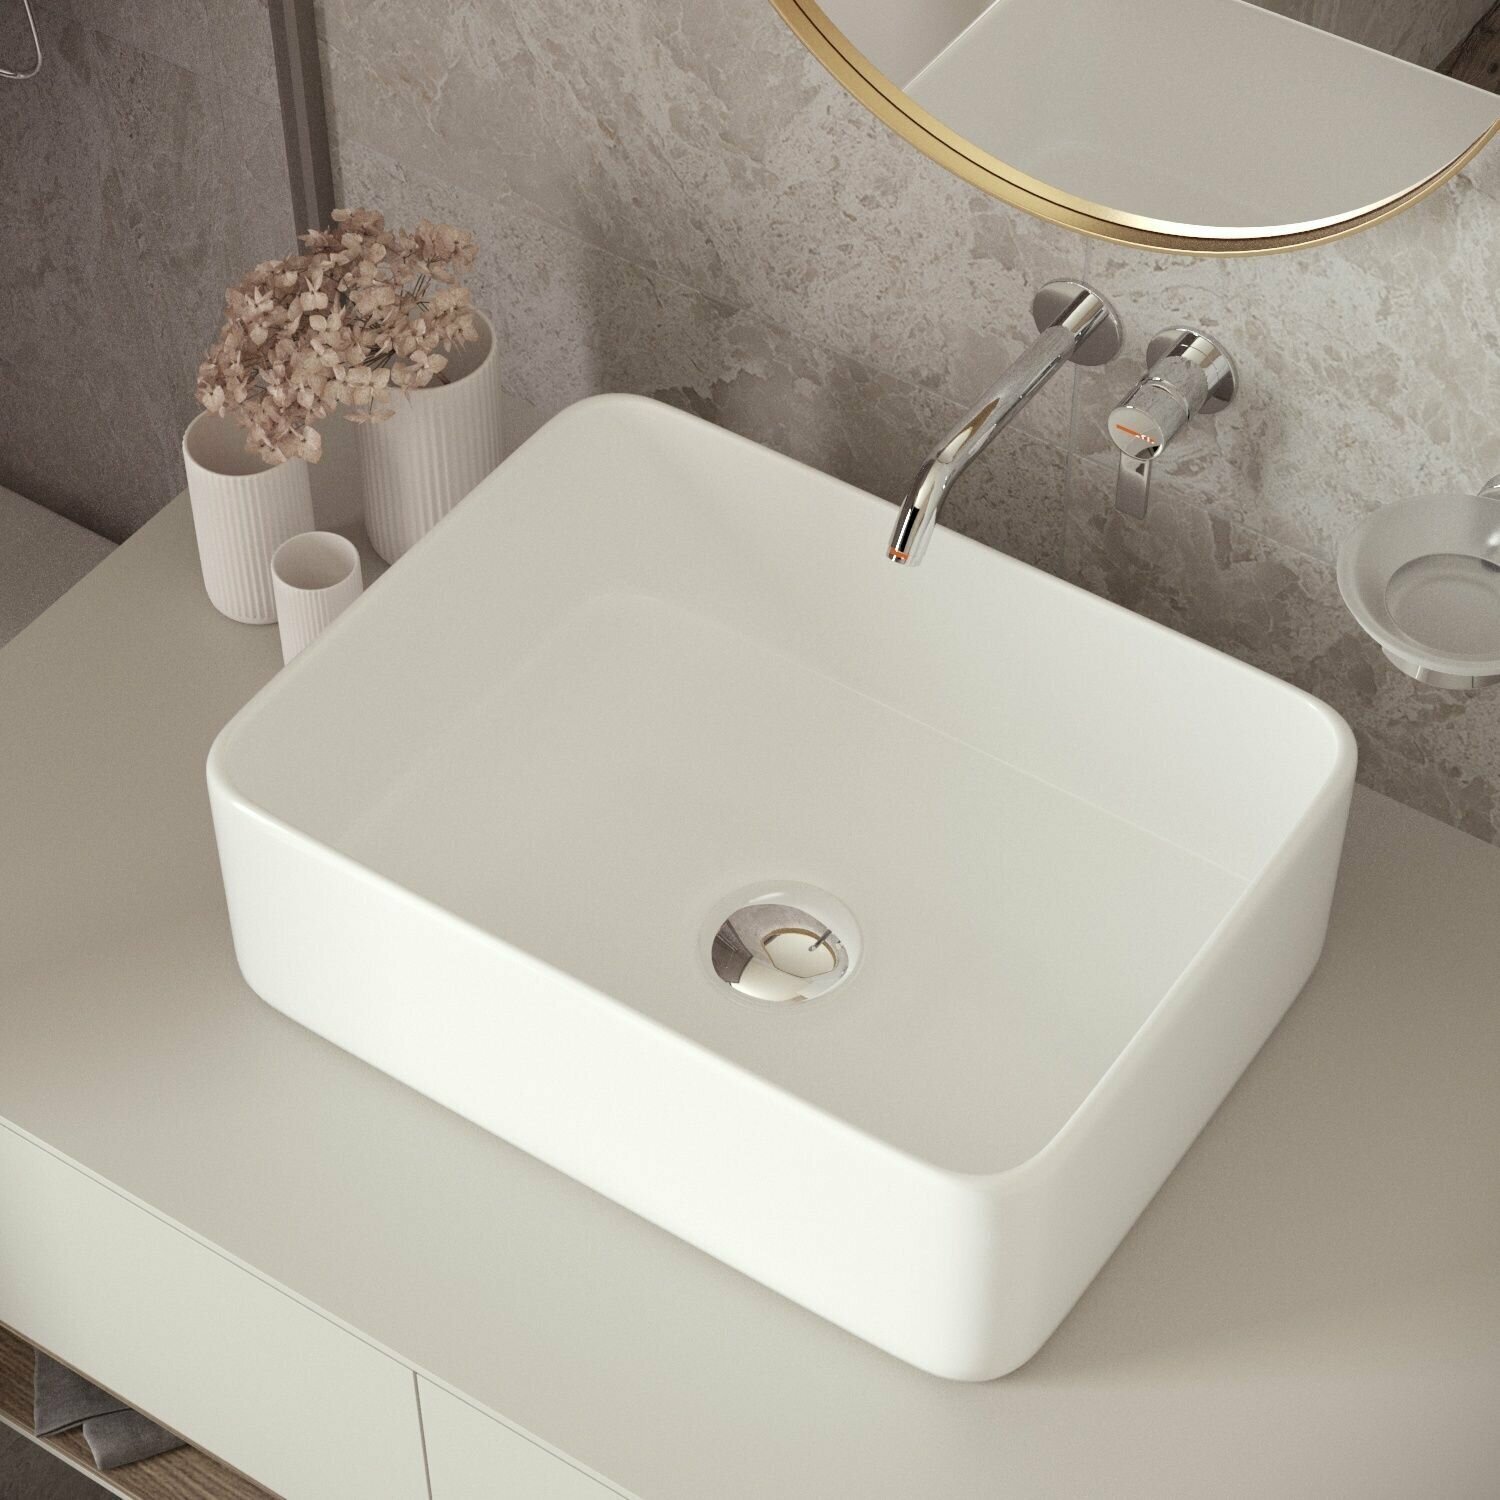 Накладная раковина в ванную Helmken 67440000: умывальник прямоугольный из фарфора 40 см, белый цвет, гарантия 25 лет